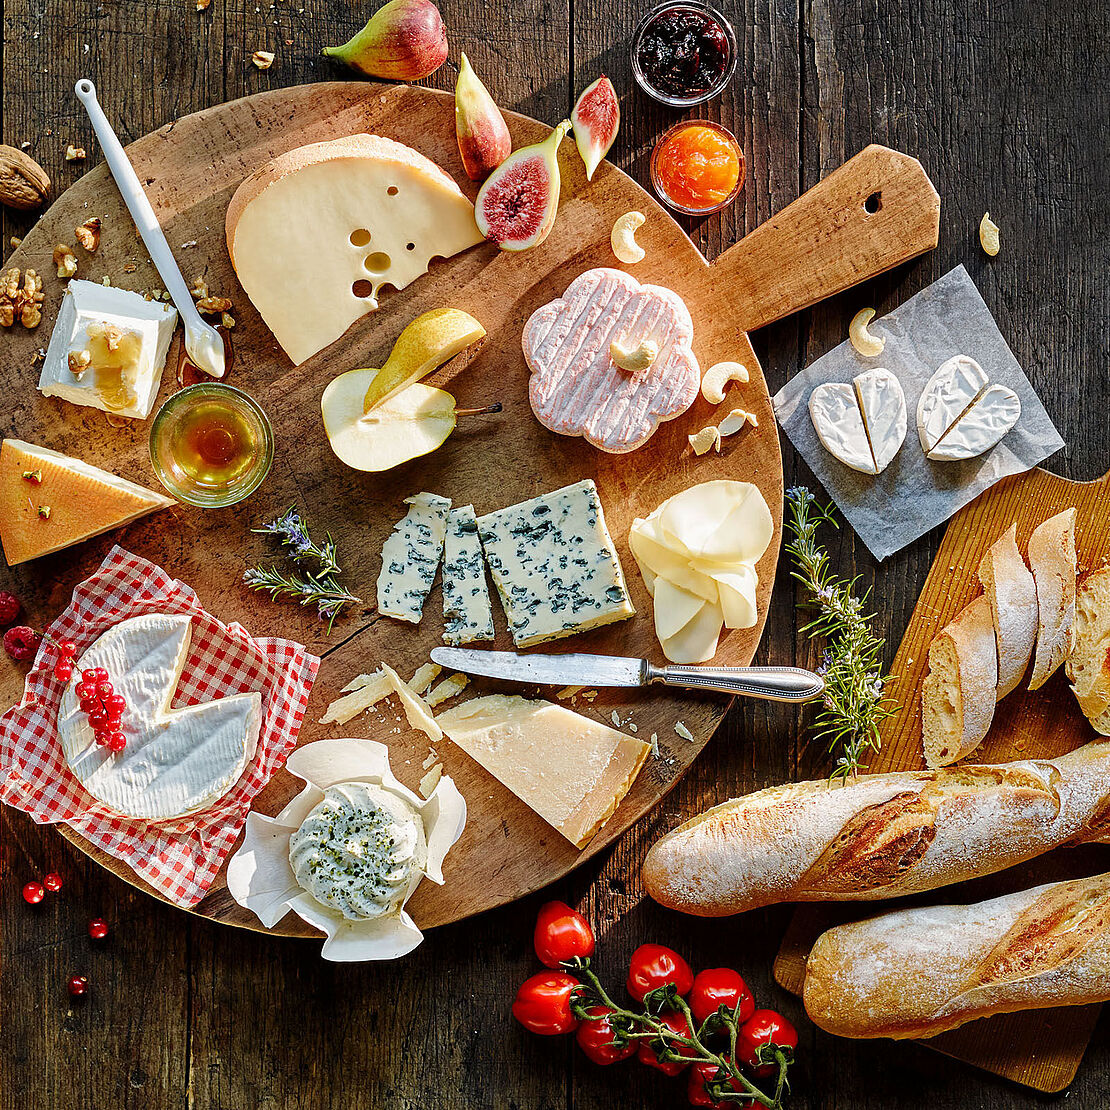 Premium Käsepicknick-platte mit zahlreichen Käsevariationen und frischem Baguette lässt Käseherzen höher schlagen